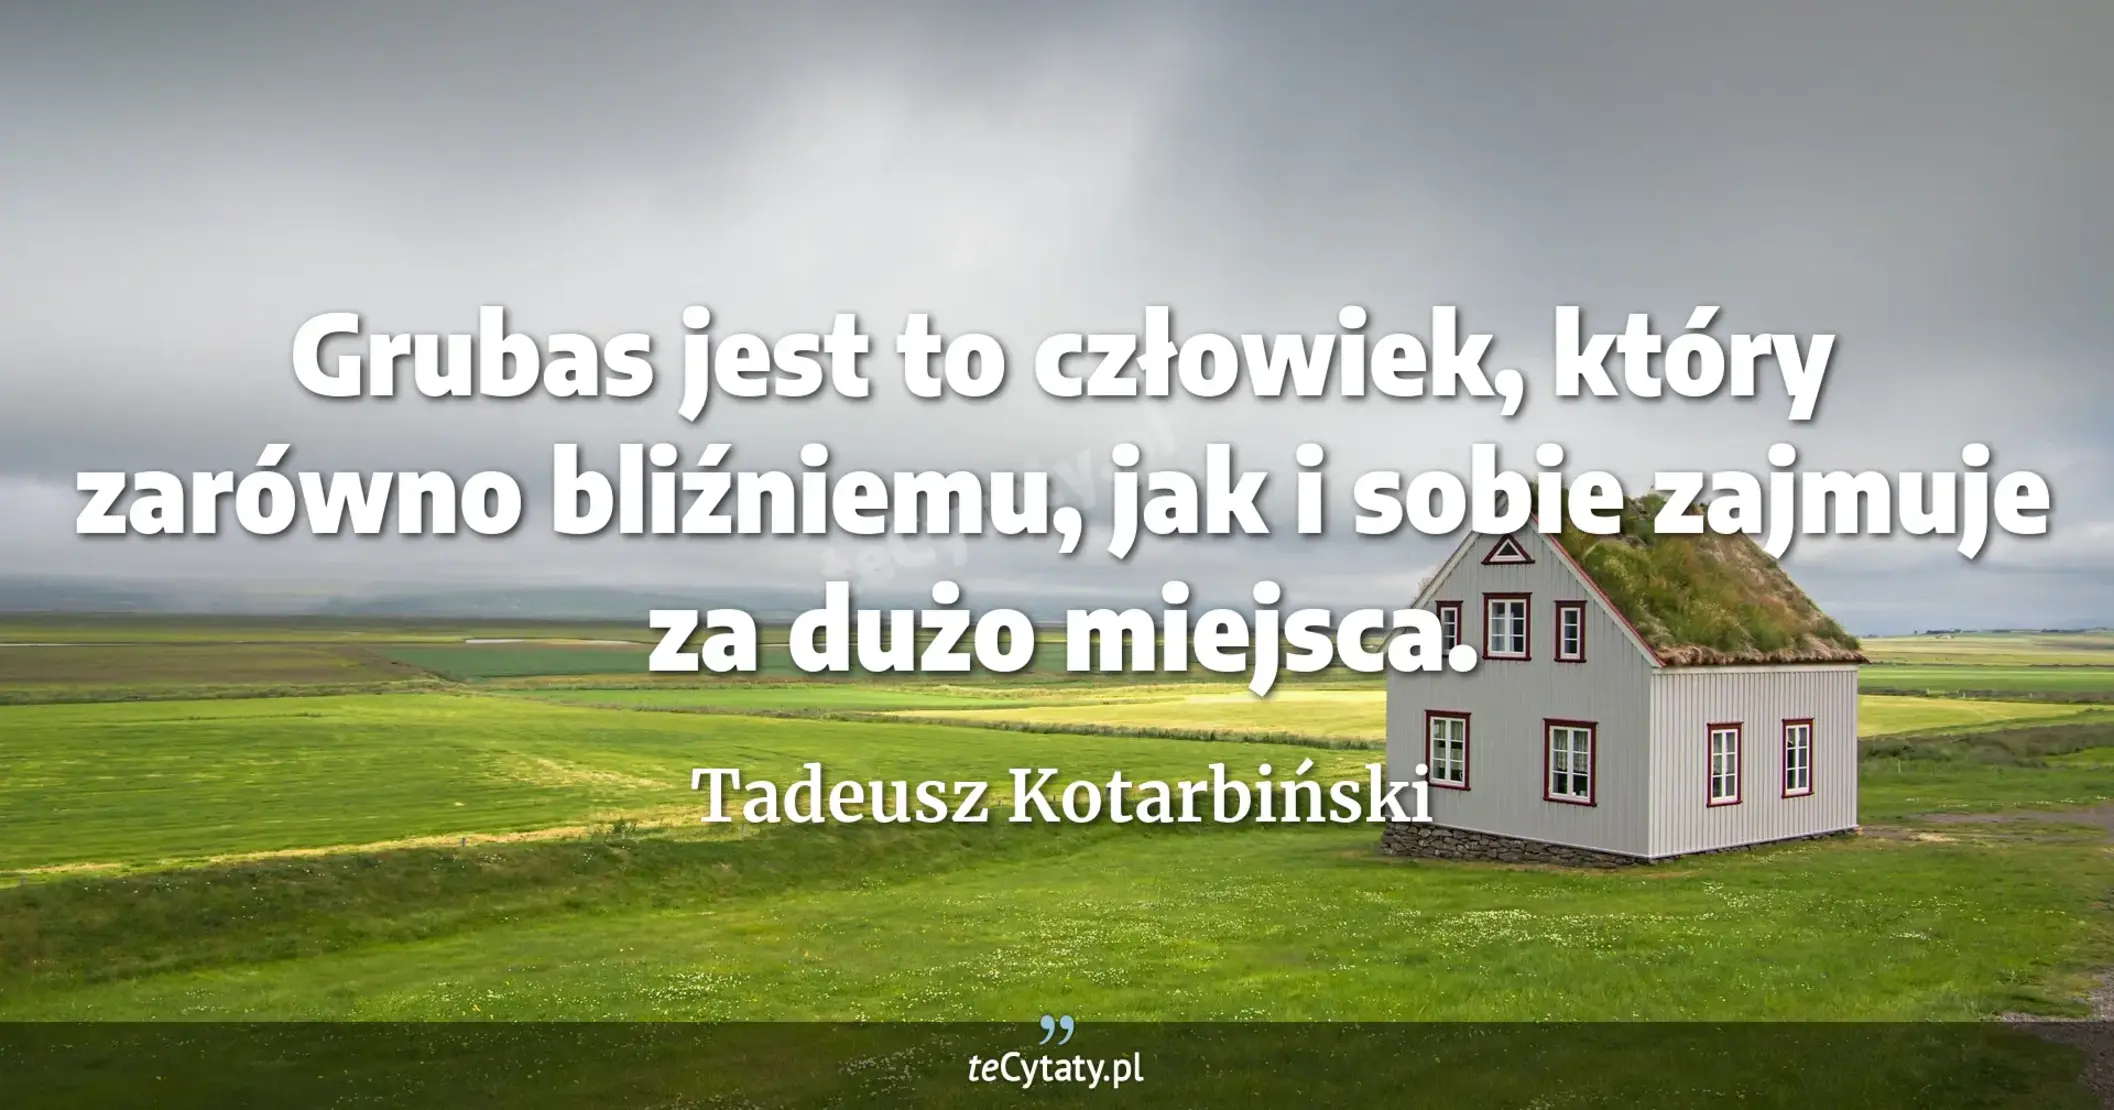 Grubas jest to człowiek, który zarówno bliźniemu, jak i sobie zajmuje za dużo miejsca. - Tadeusz Kotarbiński